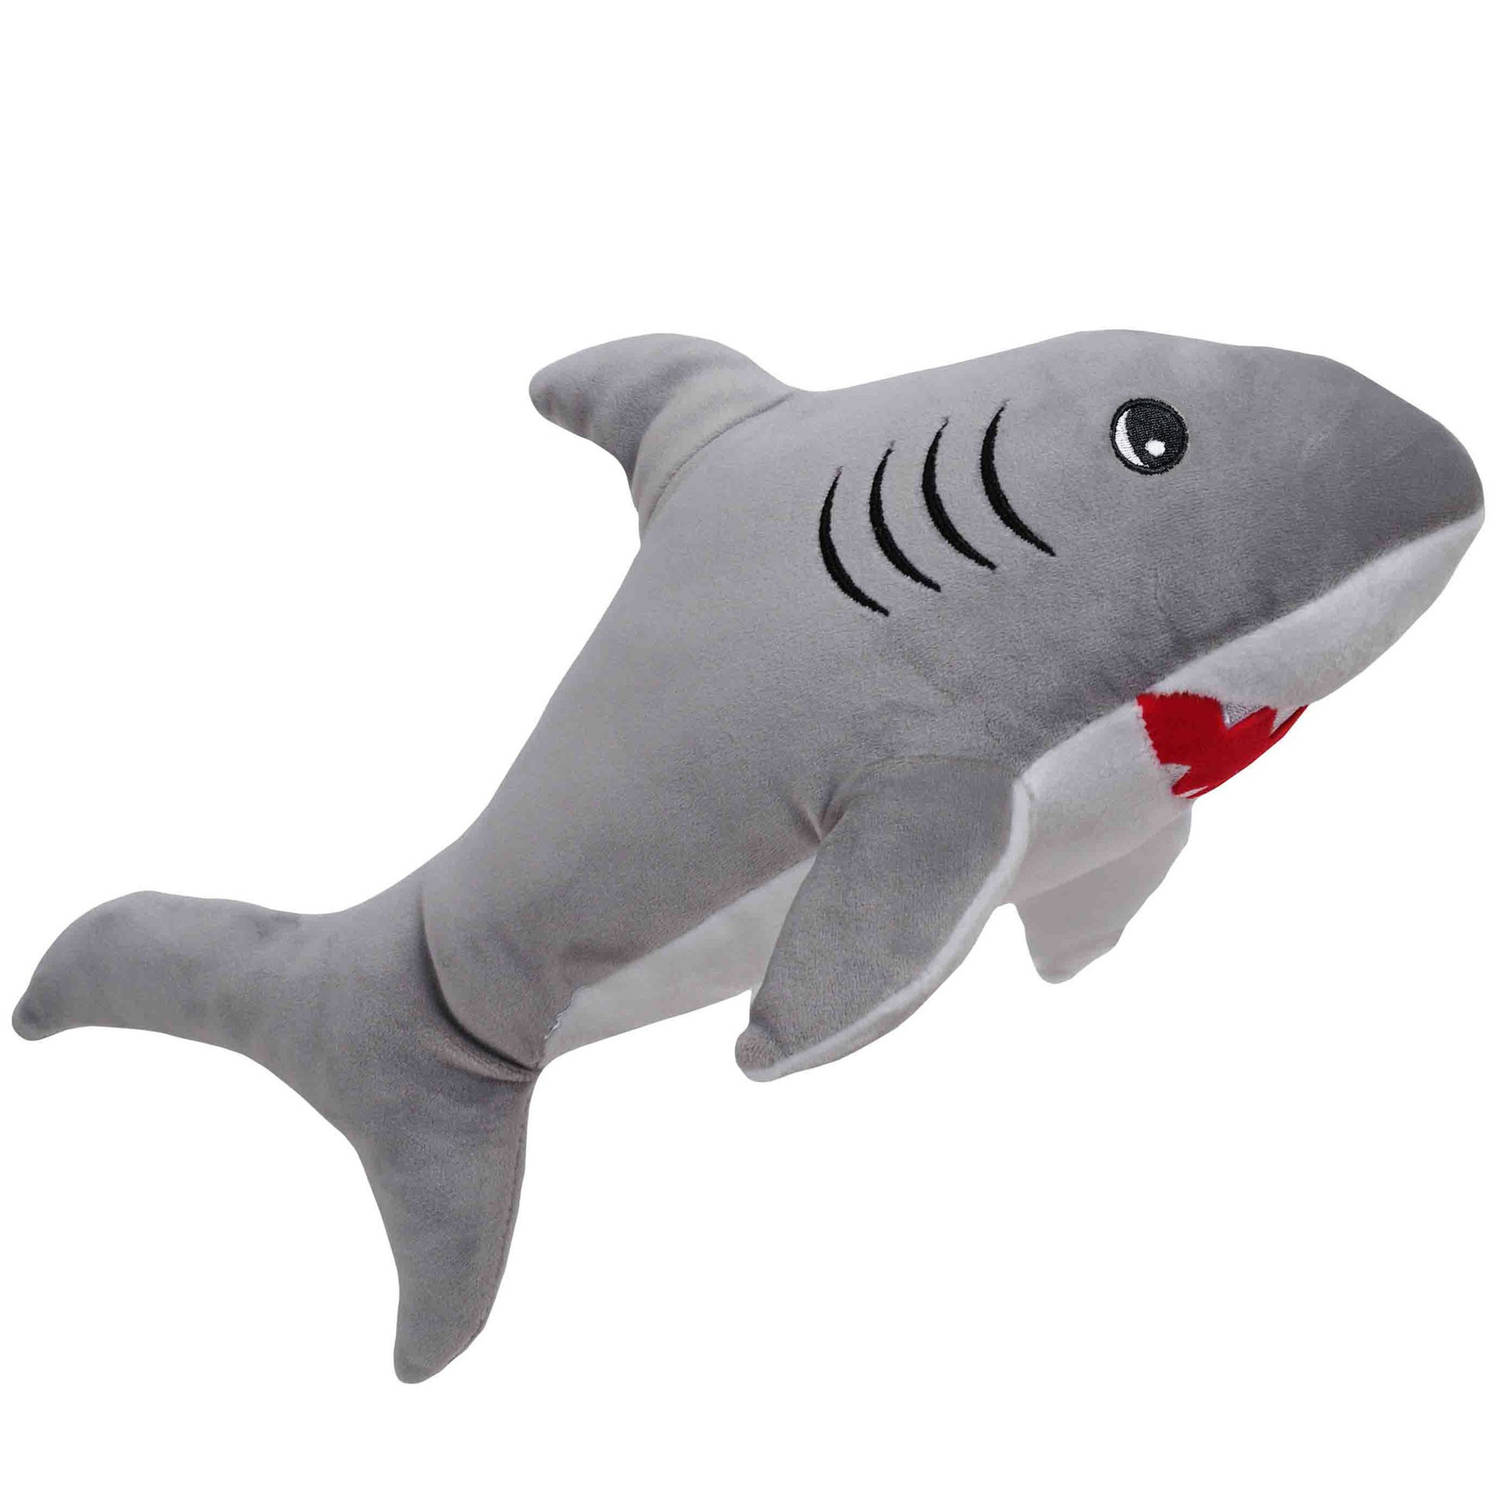 Pluche speelgoed knuffeldier Witte Haai van 52 cm - Dieren knuffels - Cadeau voor kinderen